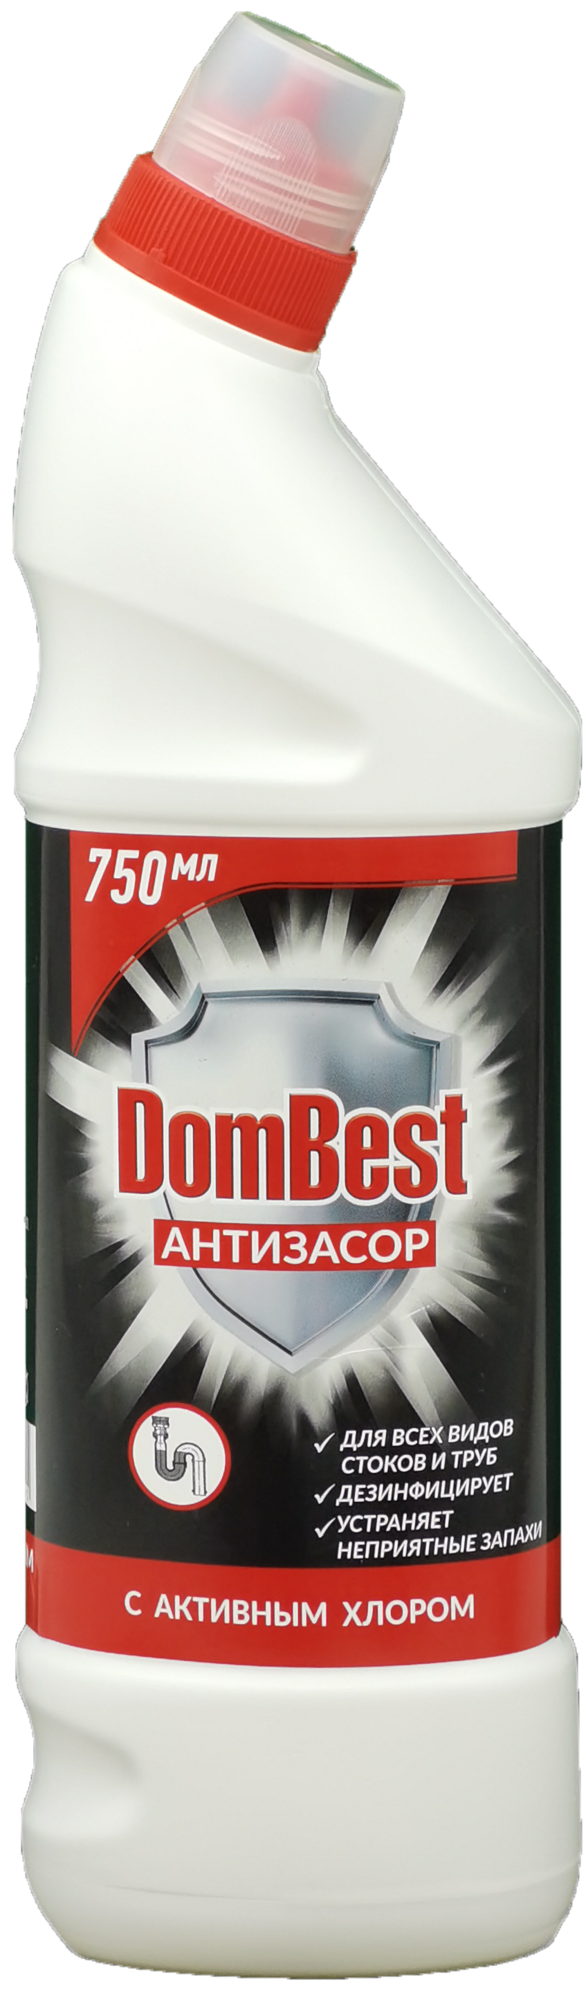 Моющее средство «Dombest Антизасор» с дезинфицирующим эффектом